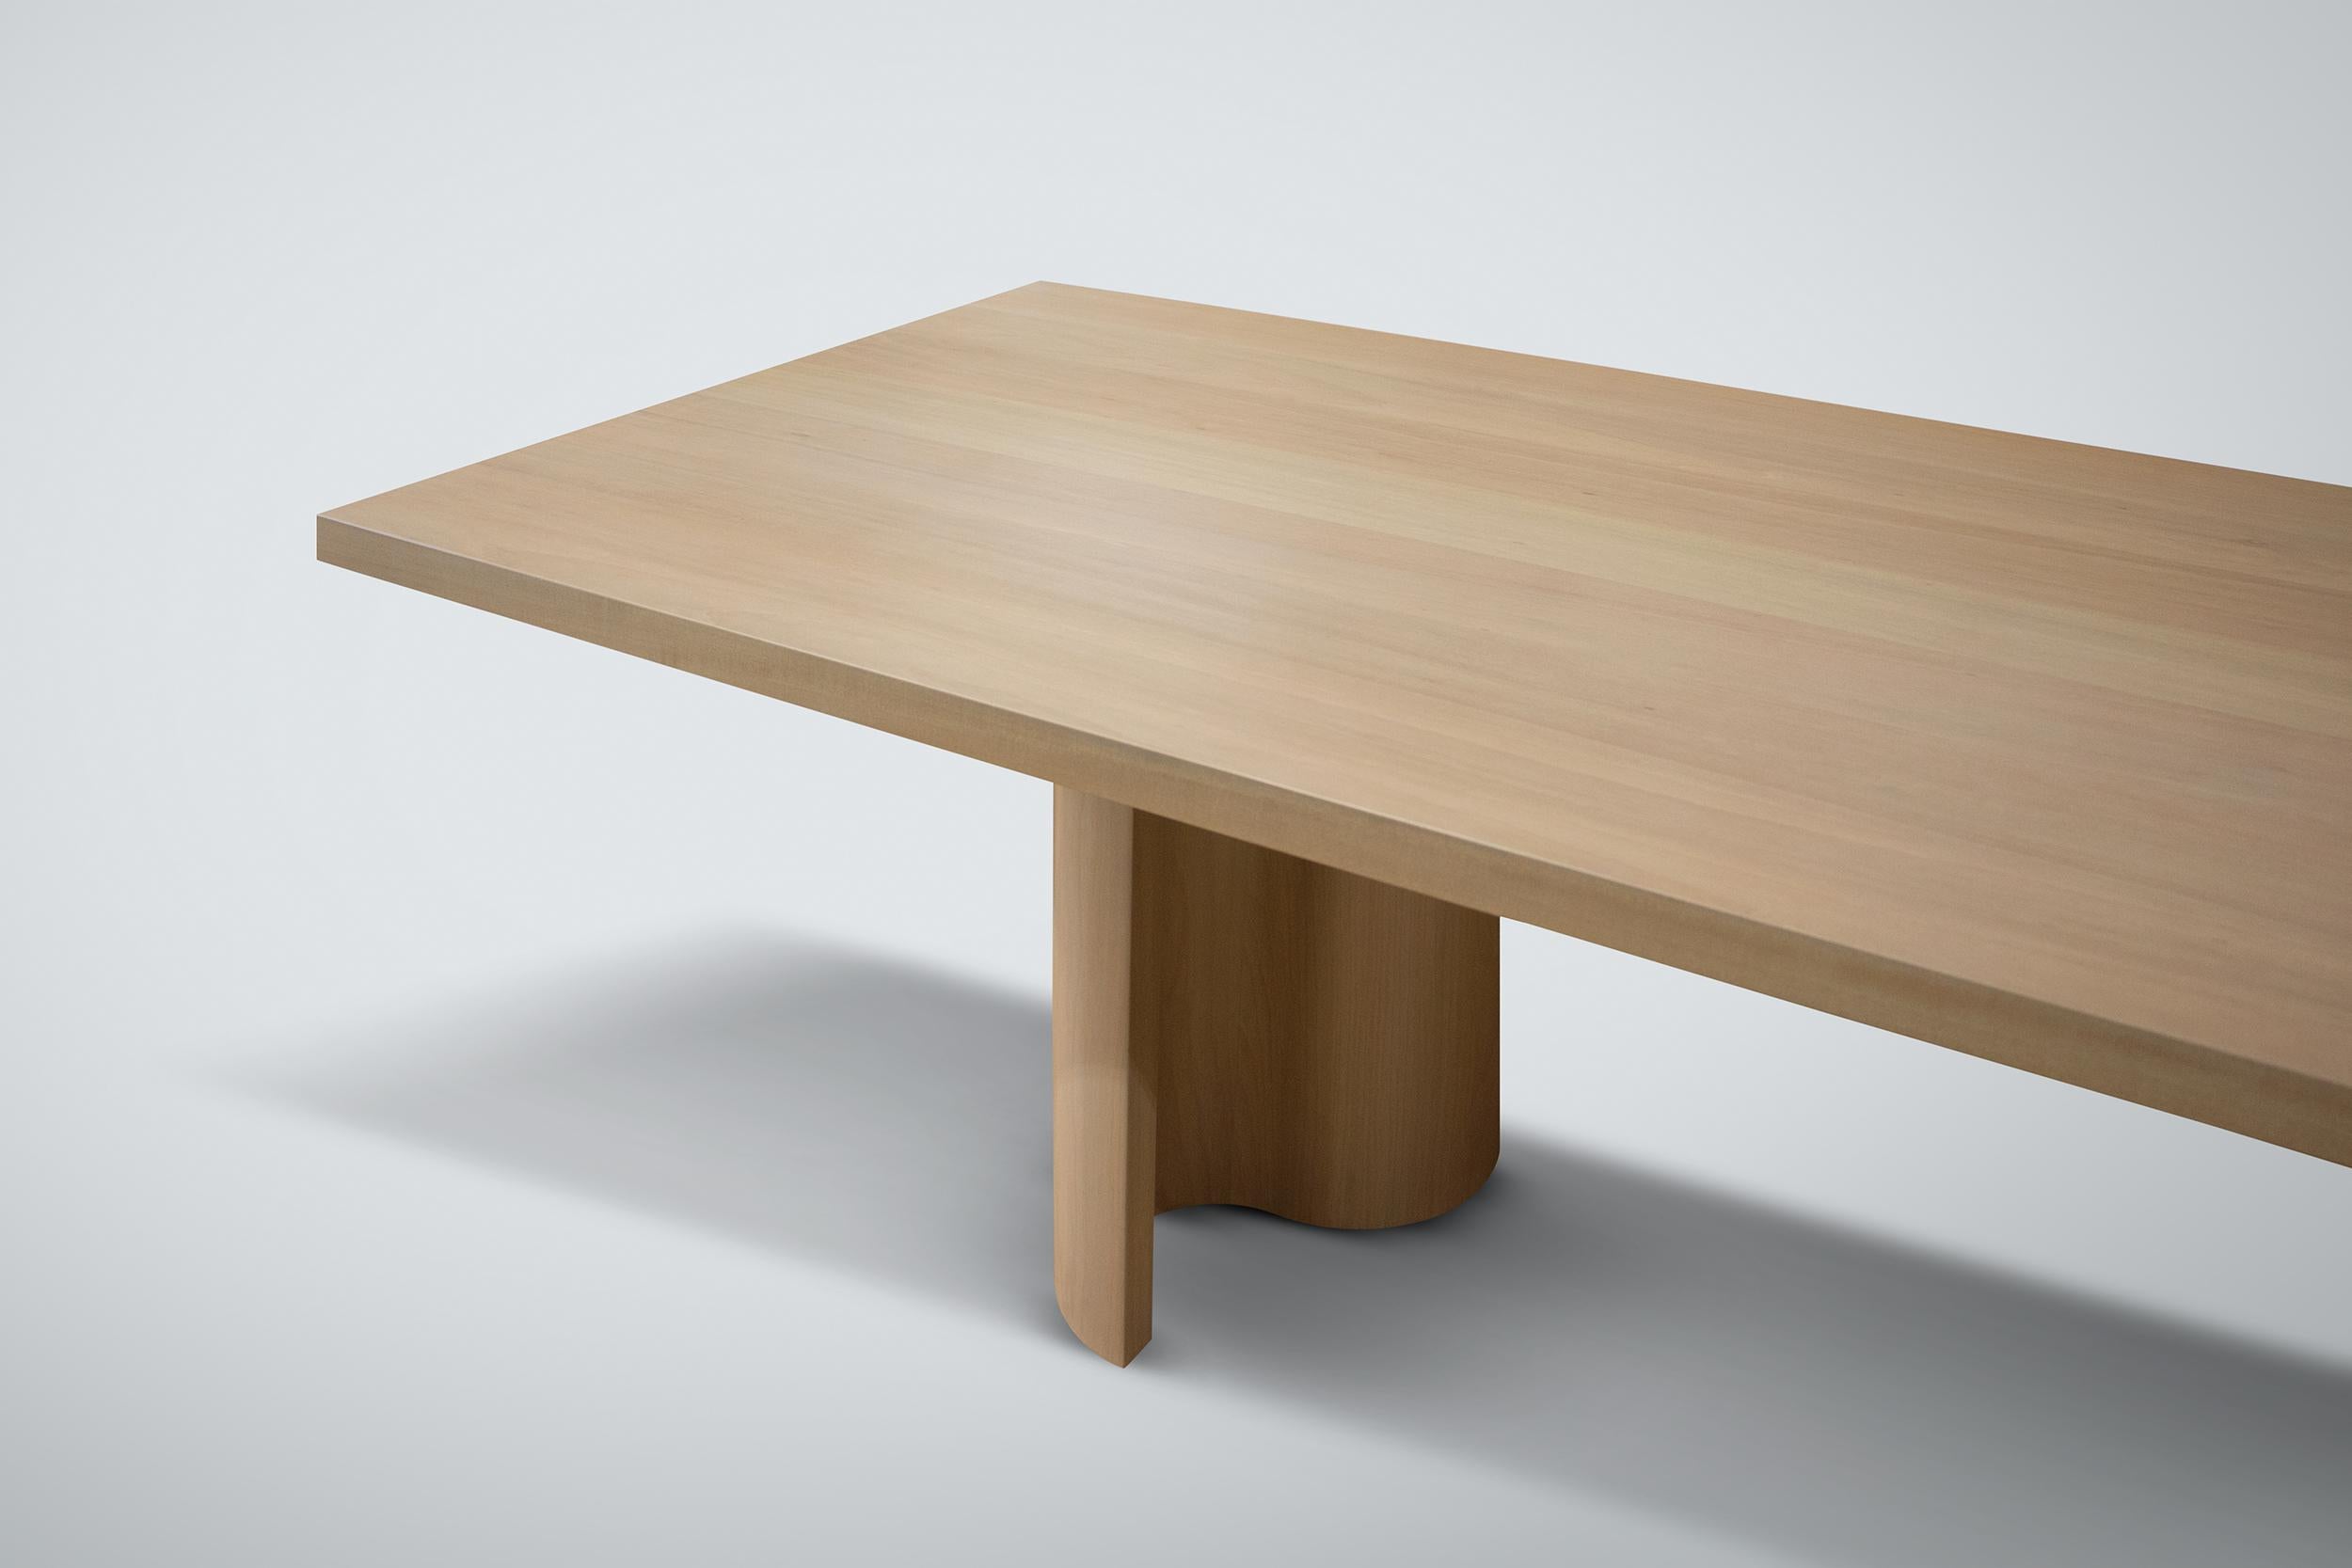 Notre table de salle à manger Wave est présentée en bois dur domestique avec une finition laquée transparente.